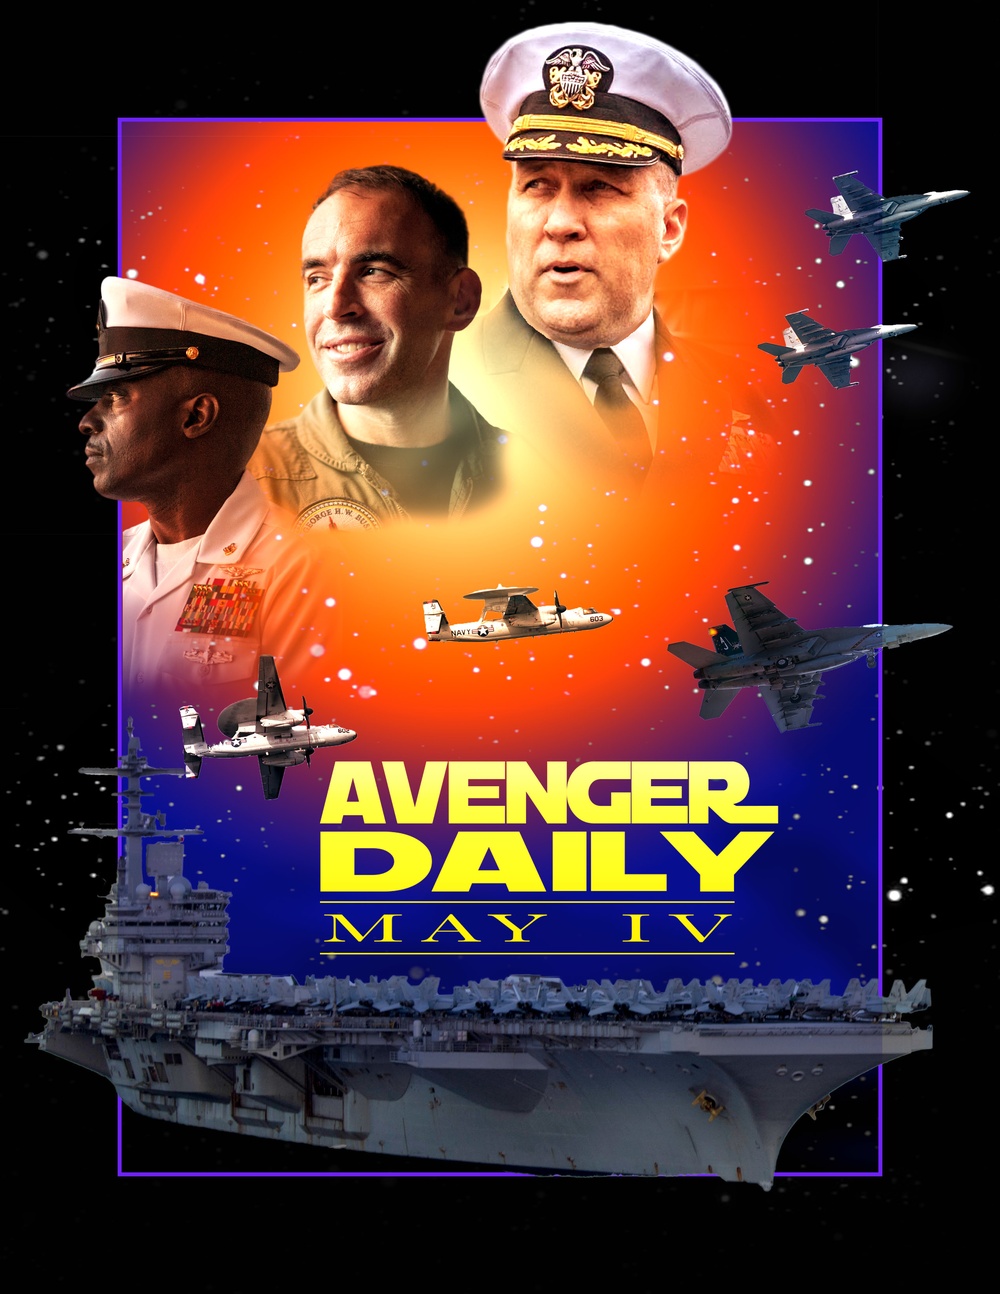 Avenger Star Wars Poster